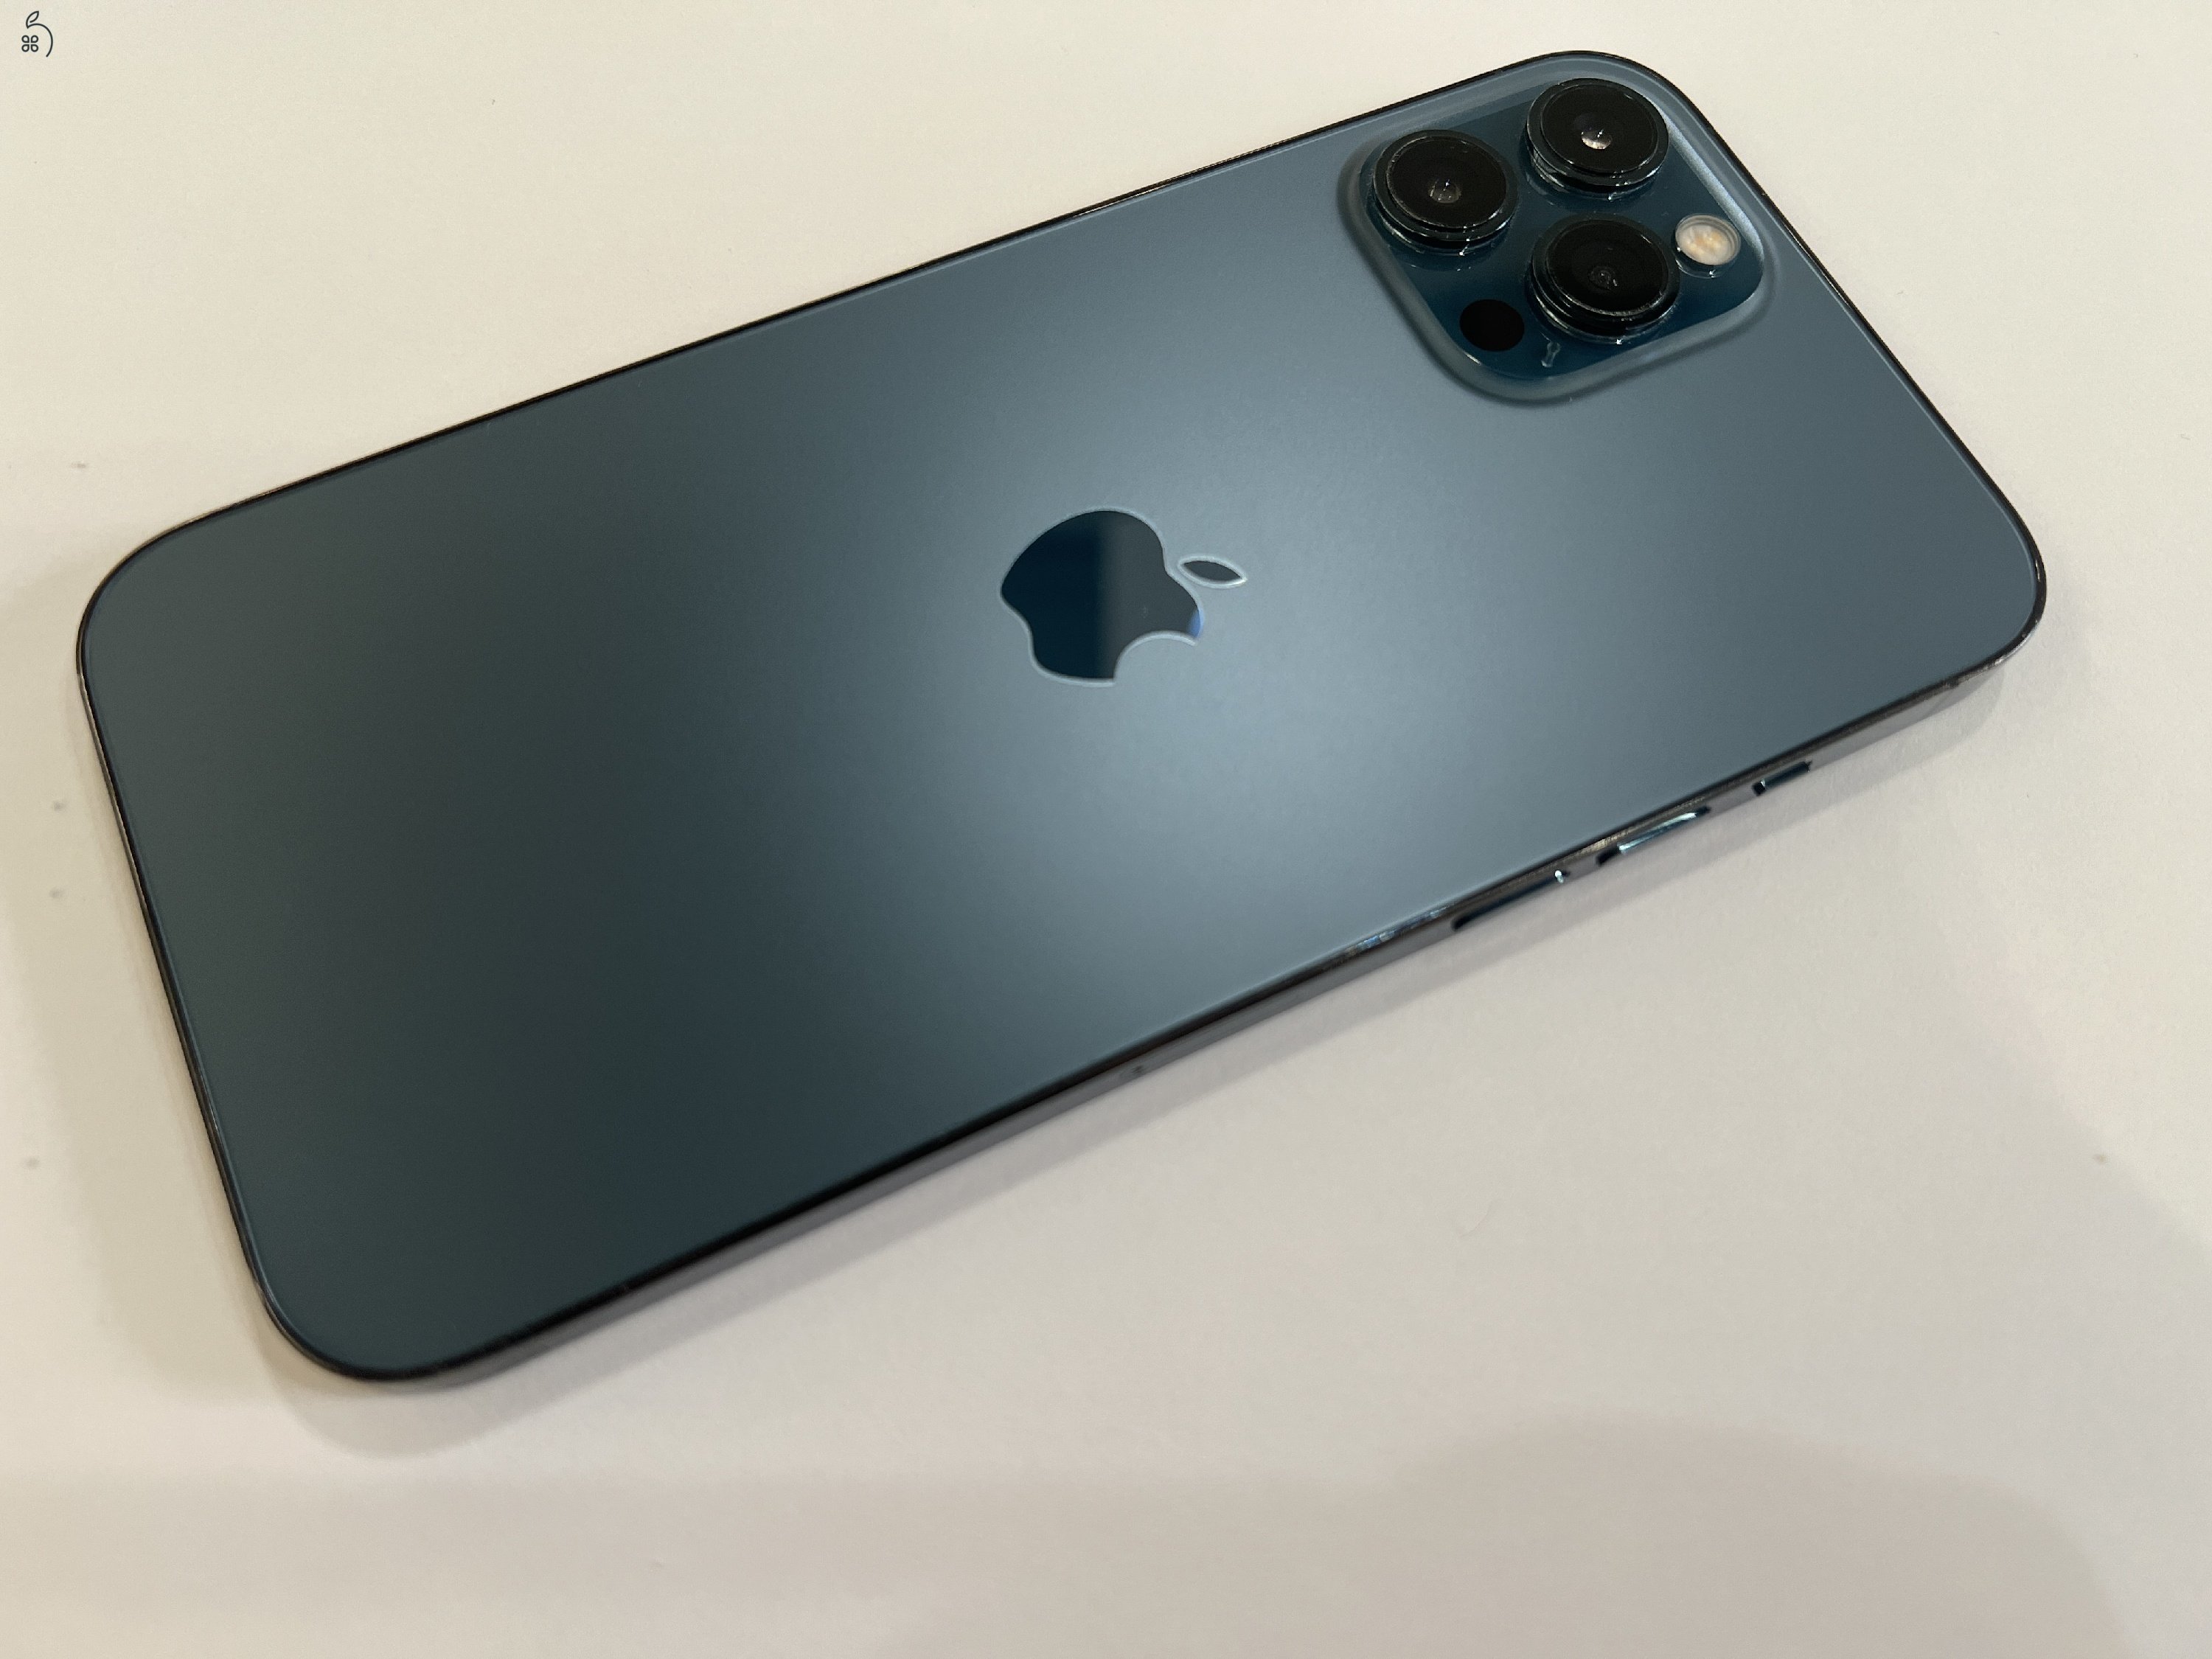 Kiváló állapotú Apple iPhone 12 Pro Max 128GB, kártyafüggetlen, kék színben, 12 hó garanciával!